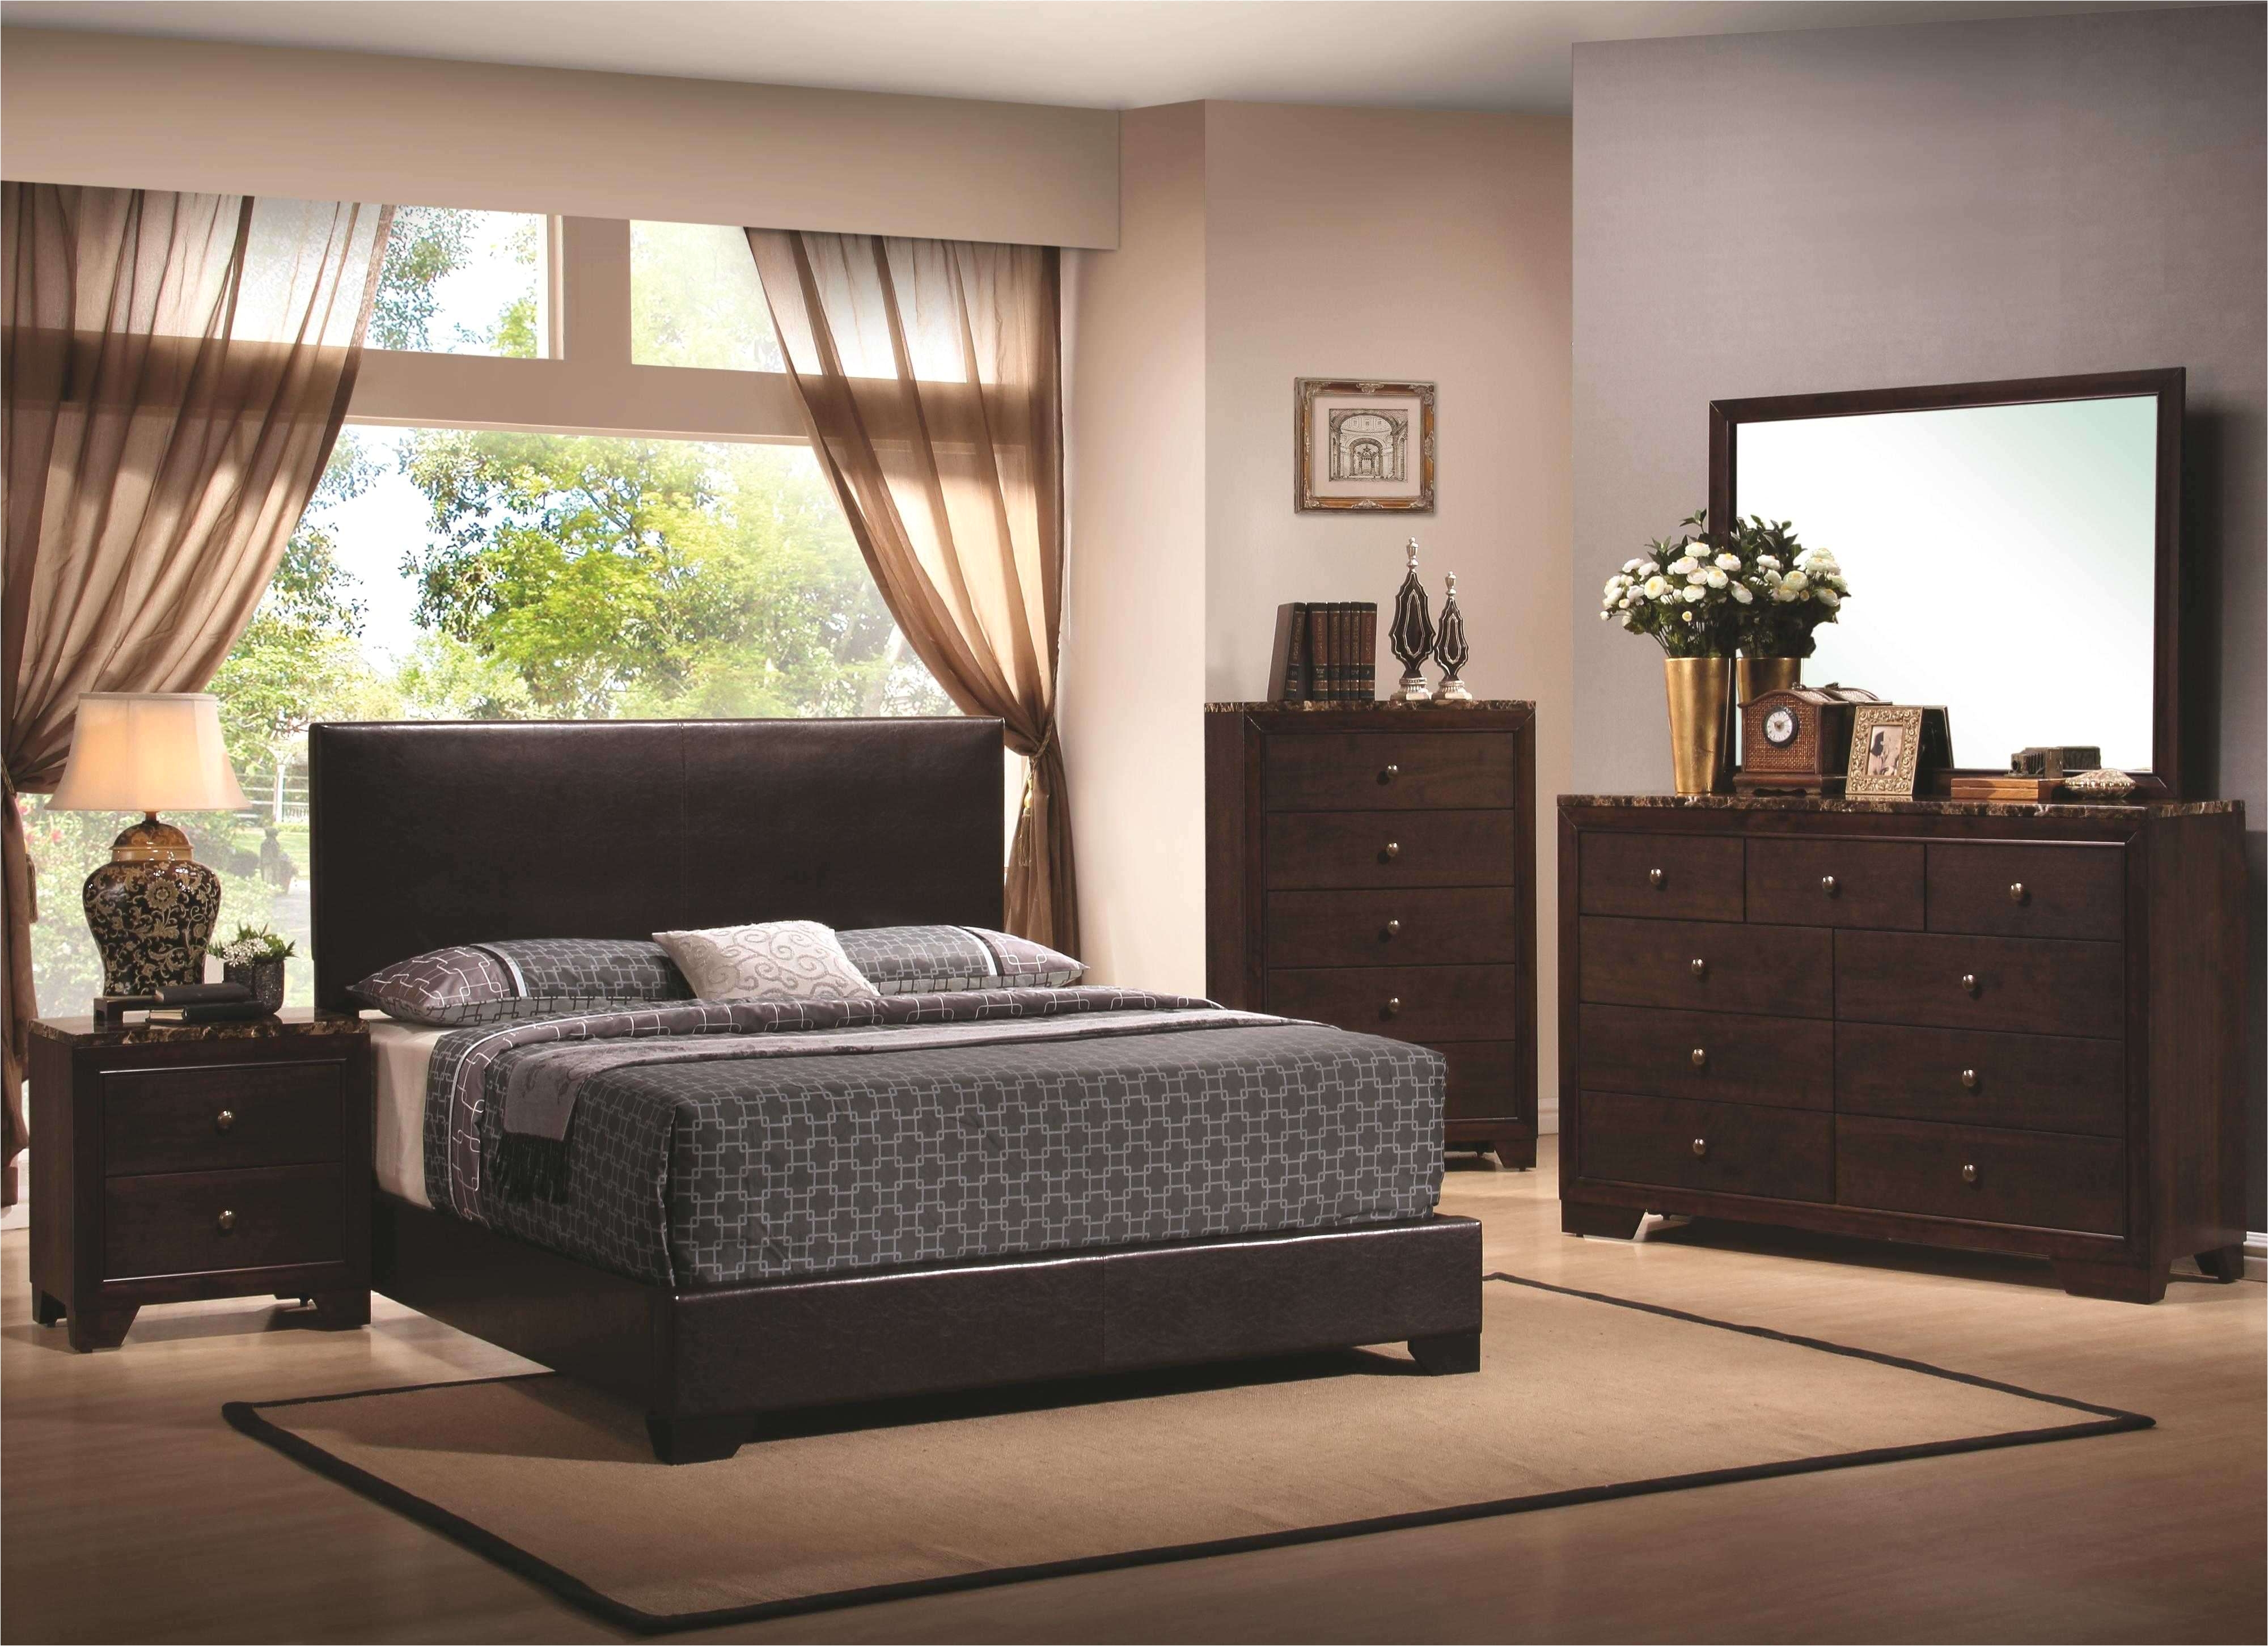 kanes furniture bedroom sets inspirational art van furniture bedroom sets mor furniture bedroom sets isama